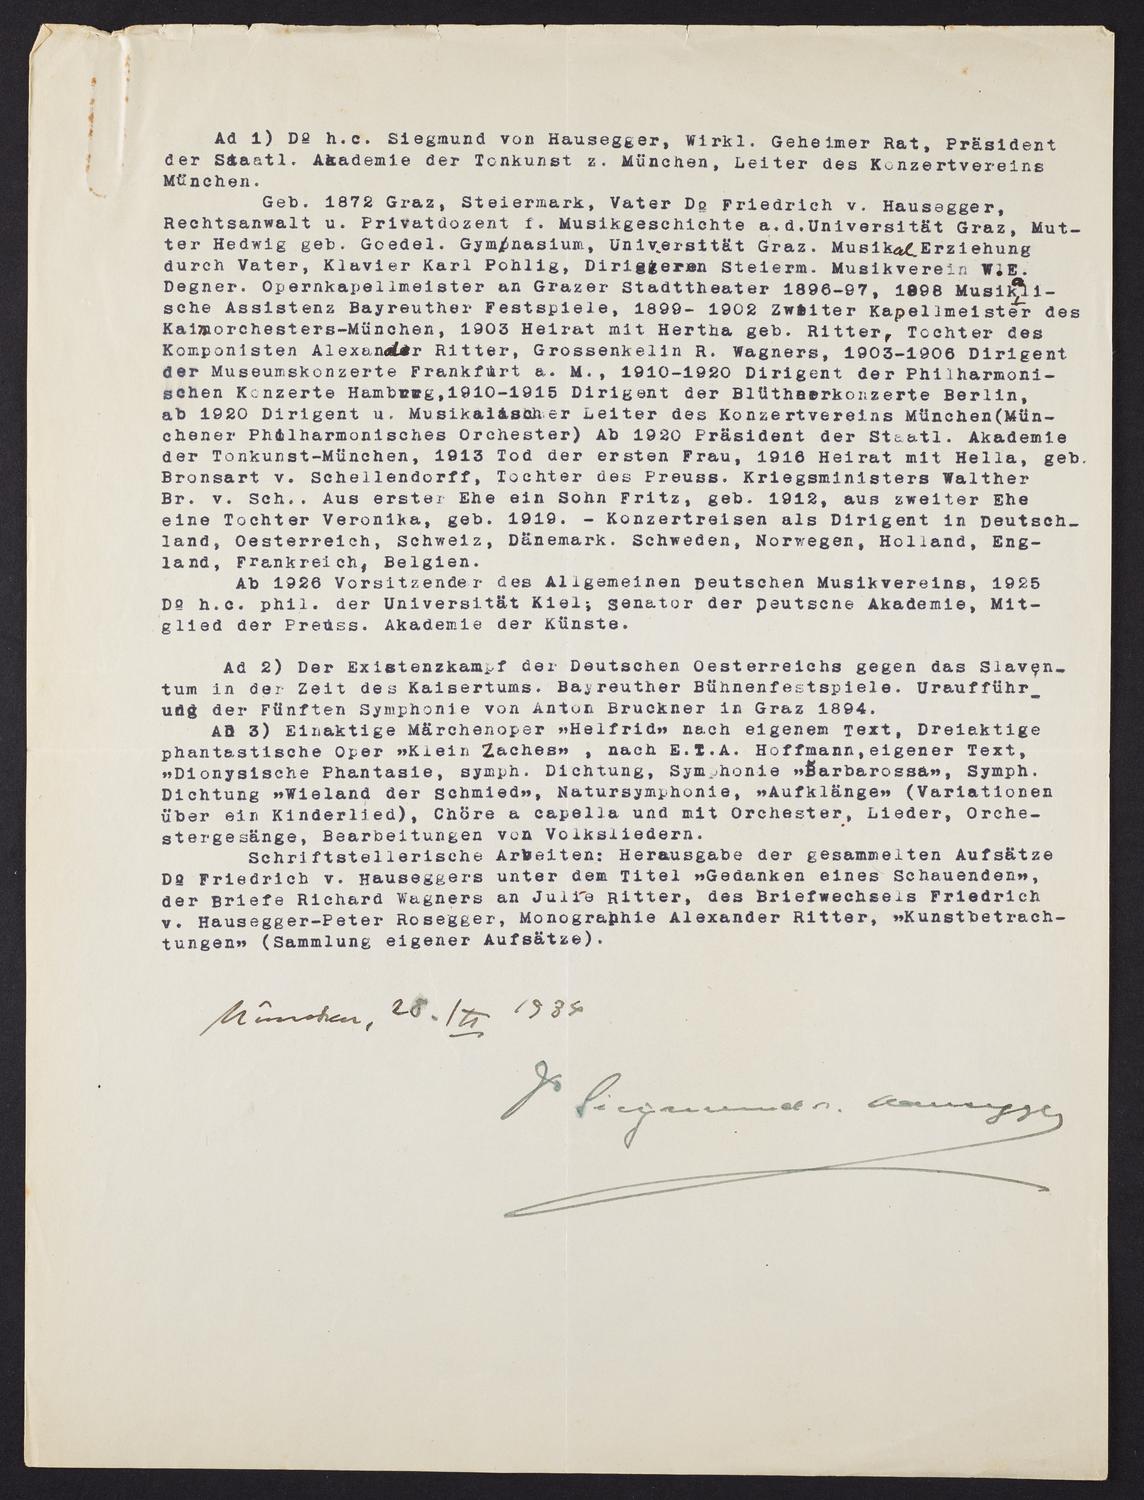 Correspondence from Sigmund von Hausegger to David Ewen